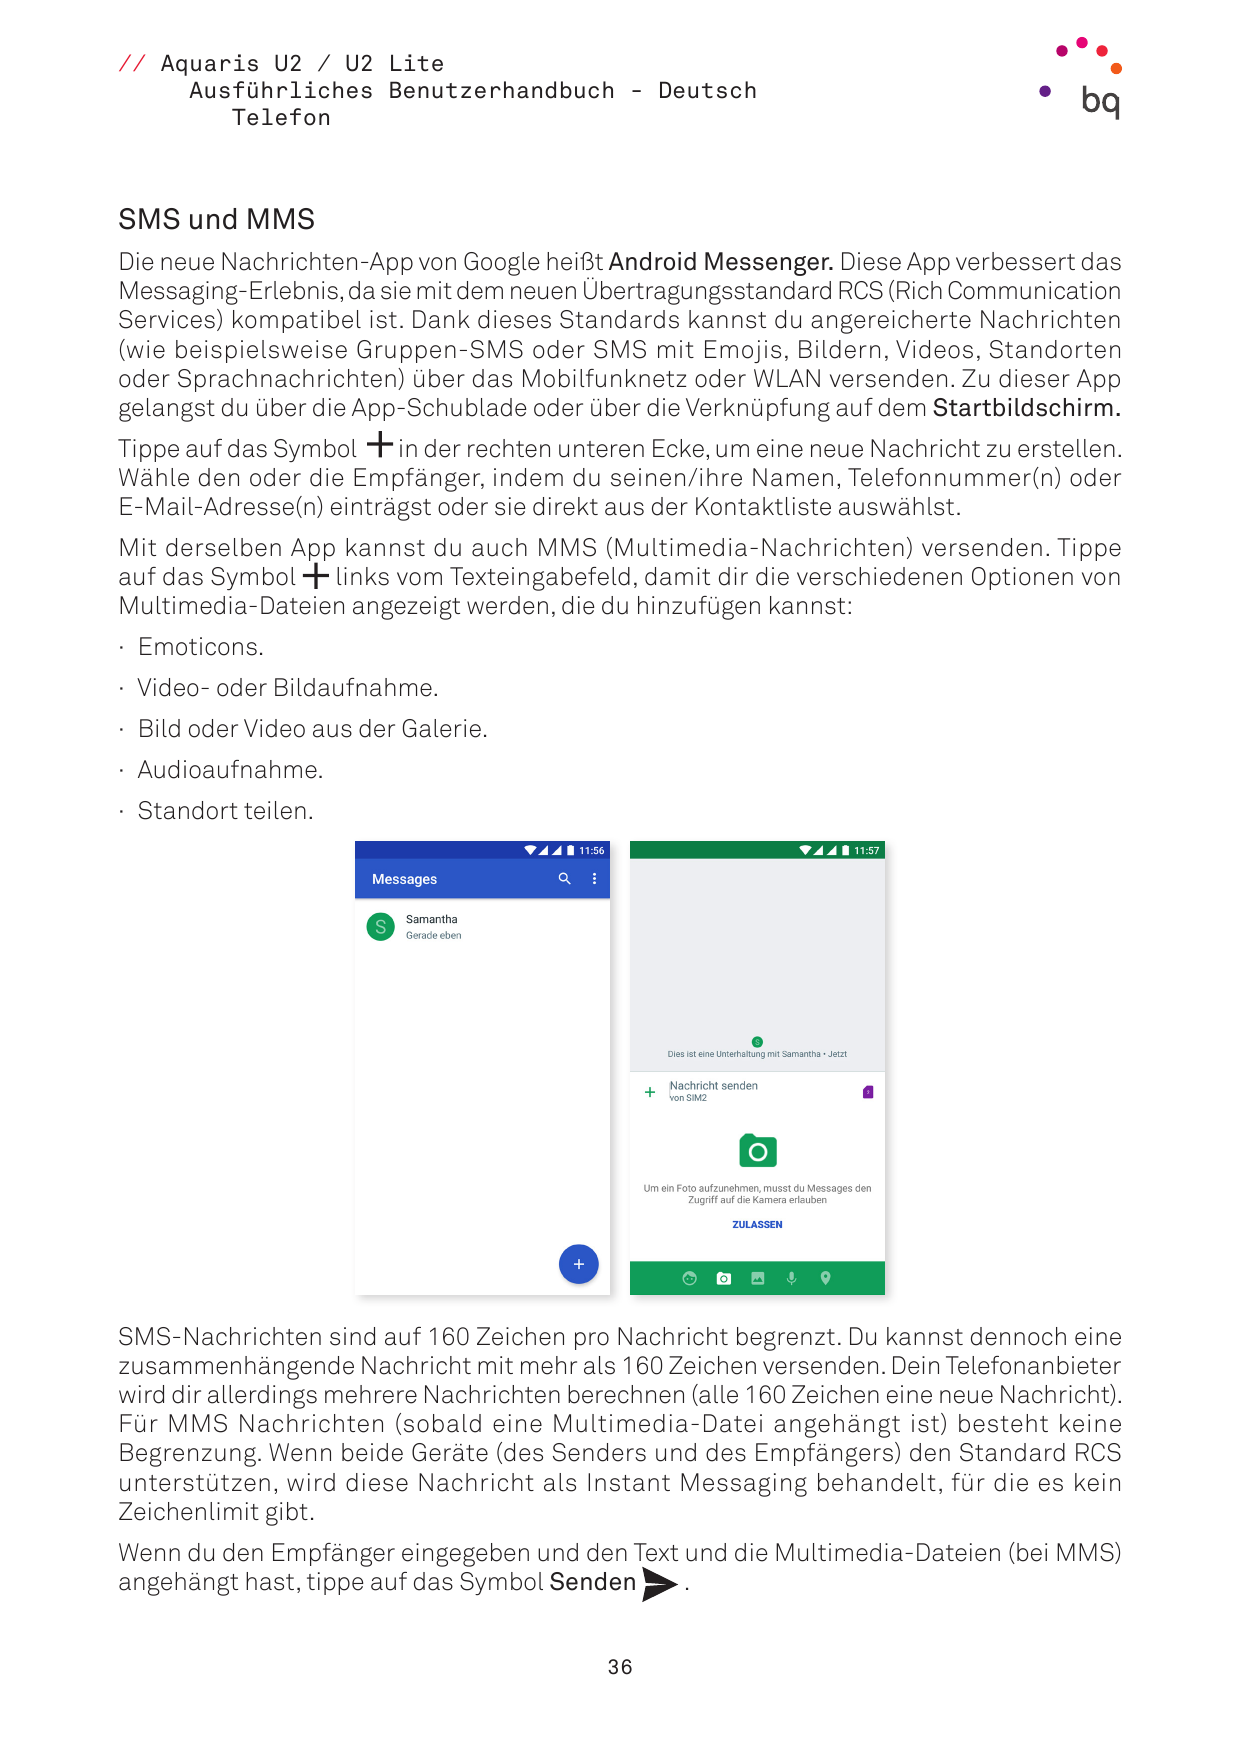 // Aquaris U2 / U2 LiteAusführliches Benutzerhandbuch - DeutschTelefonSMS und MMSDie neue Nachrichten-App von Google heißt Andro